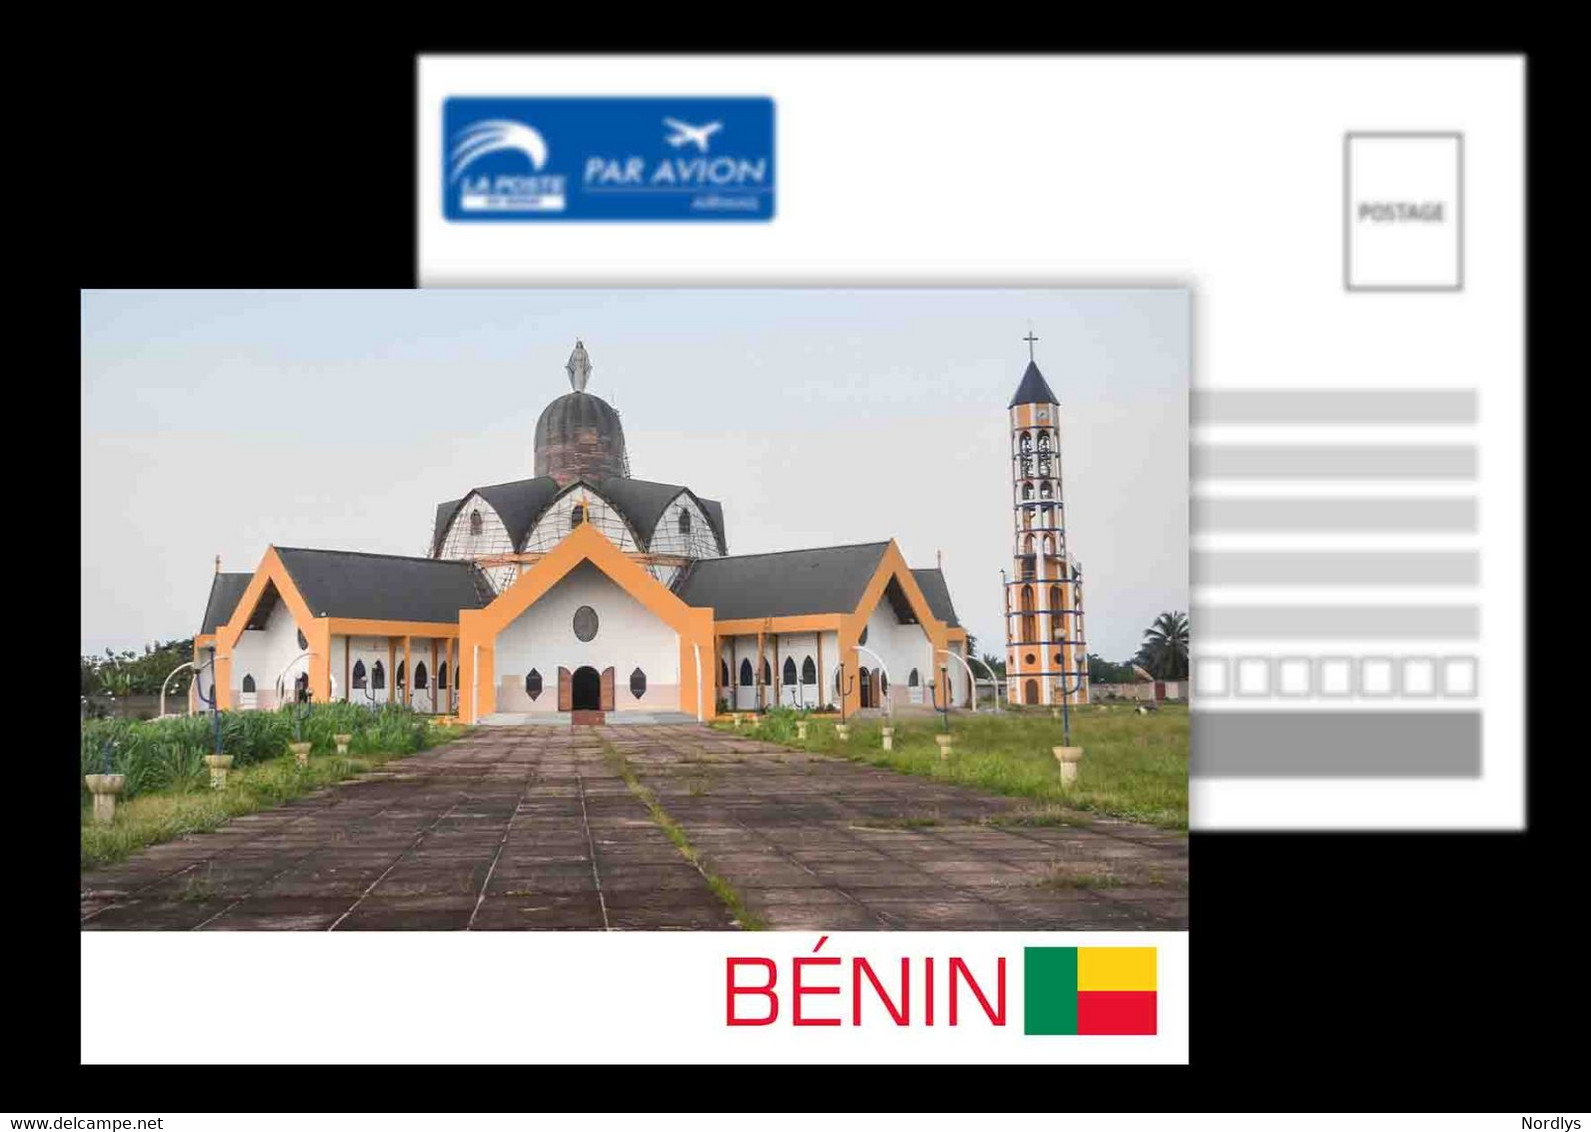 Benin / Postcard /View Card - Benin